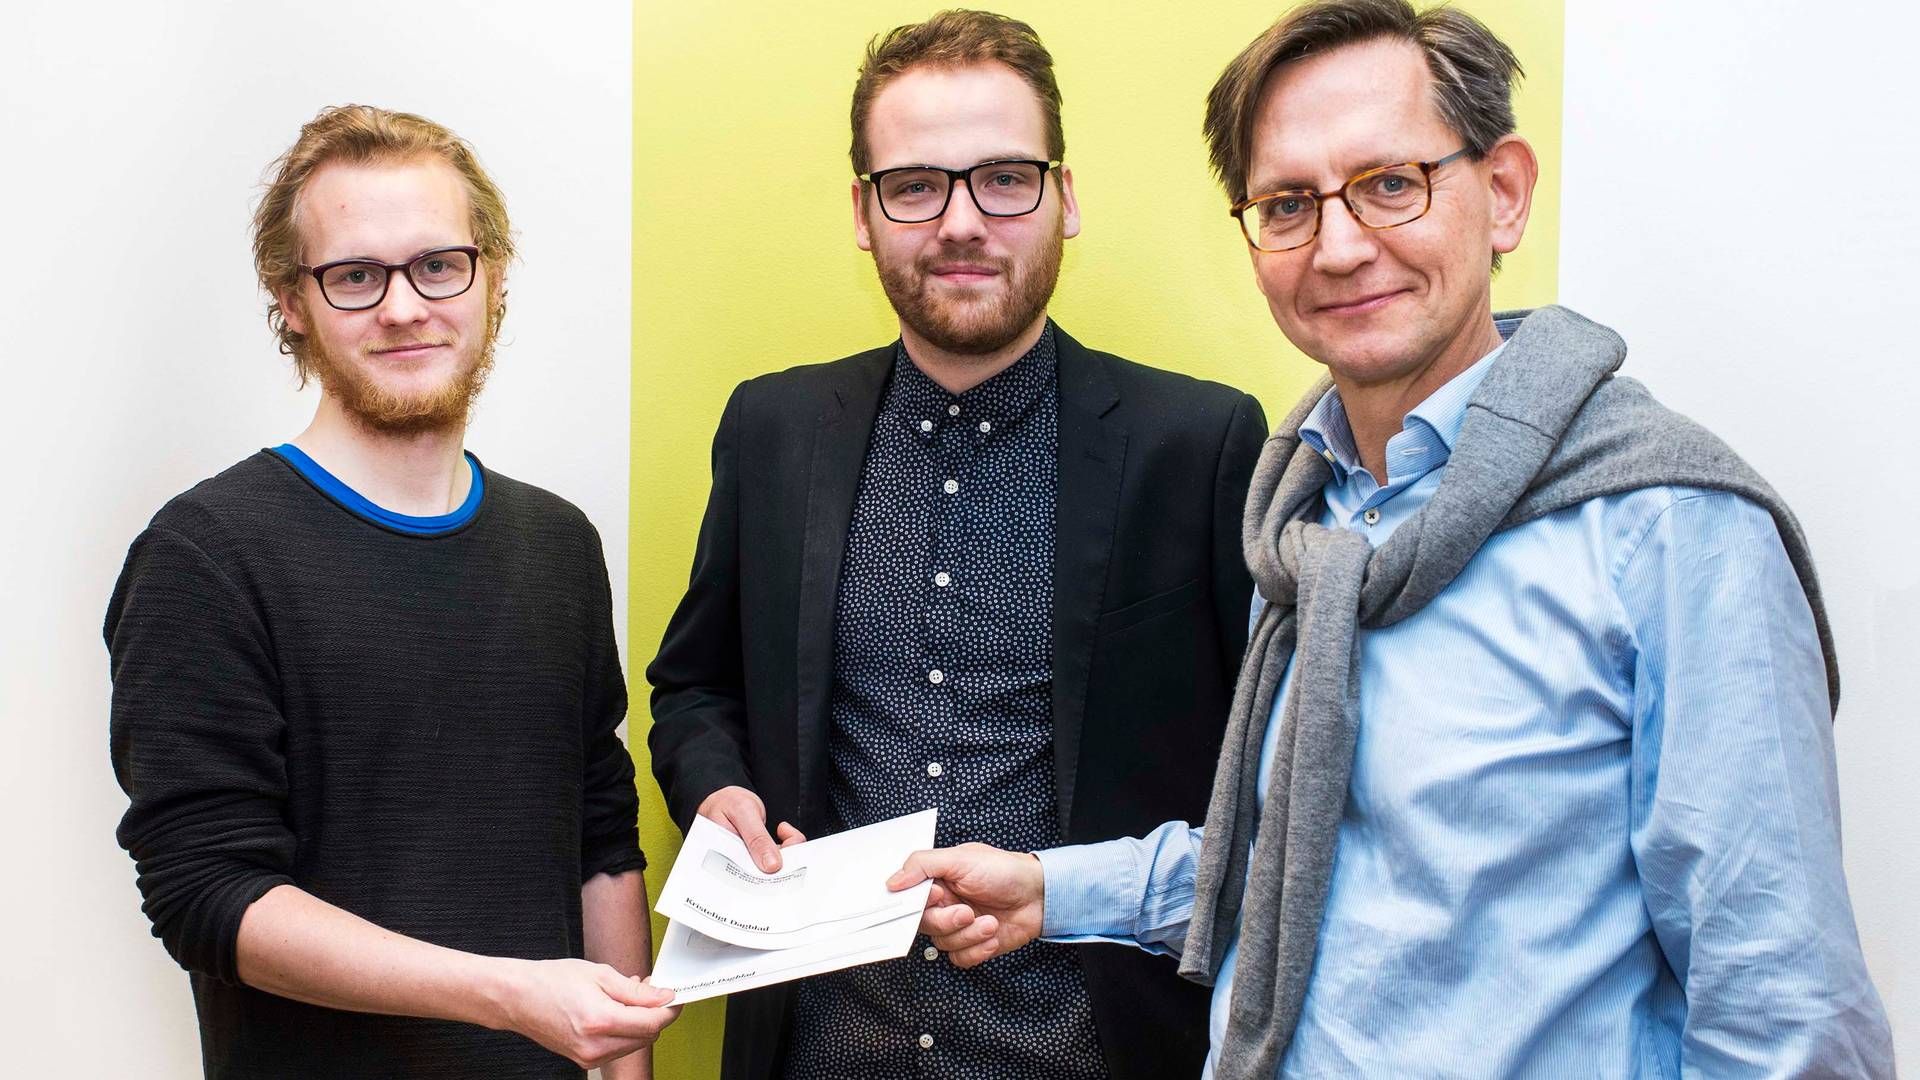 Adm. direktør og chefredaktør for Kristeligt Dagblad, Erik Bjerager (th) sammen med vinderne af avisens Tro, Etik og Eksistens-pris | Foto: Kristeligt Dagblad